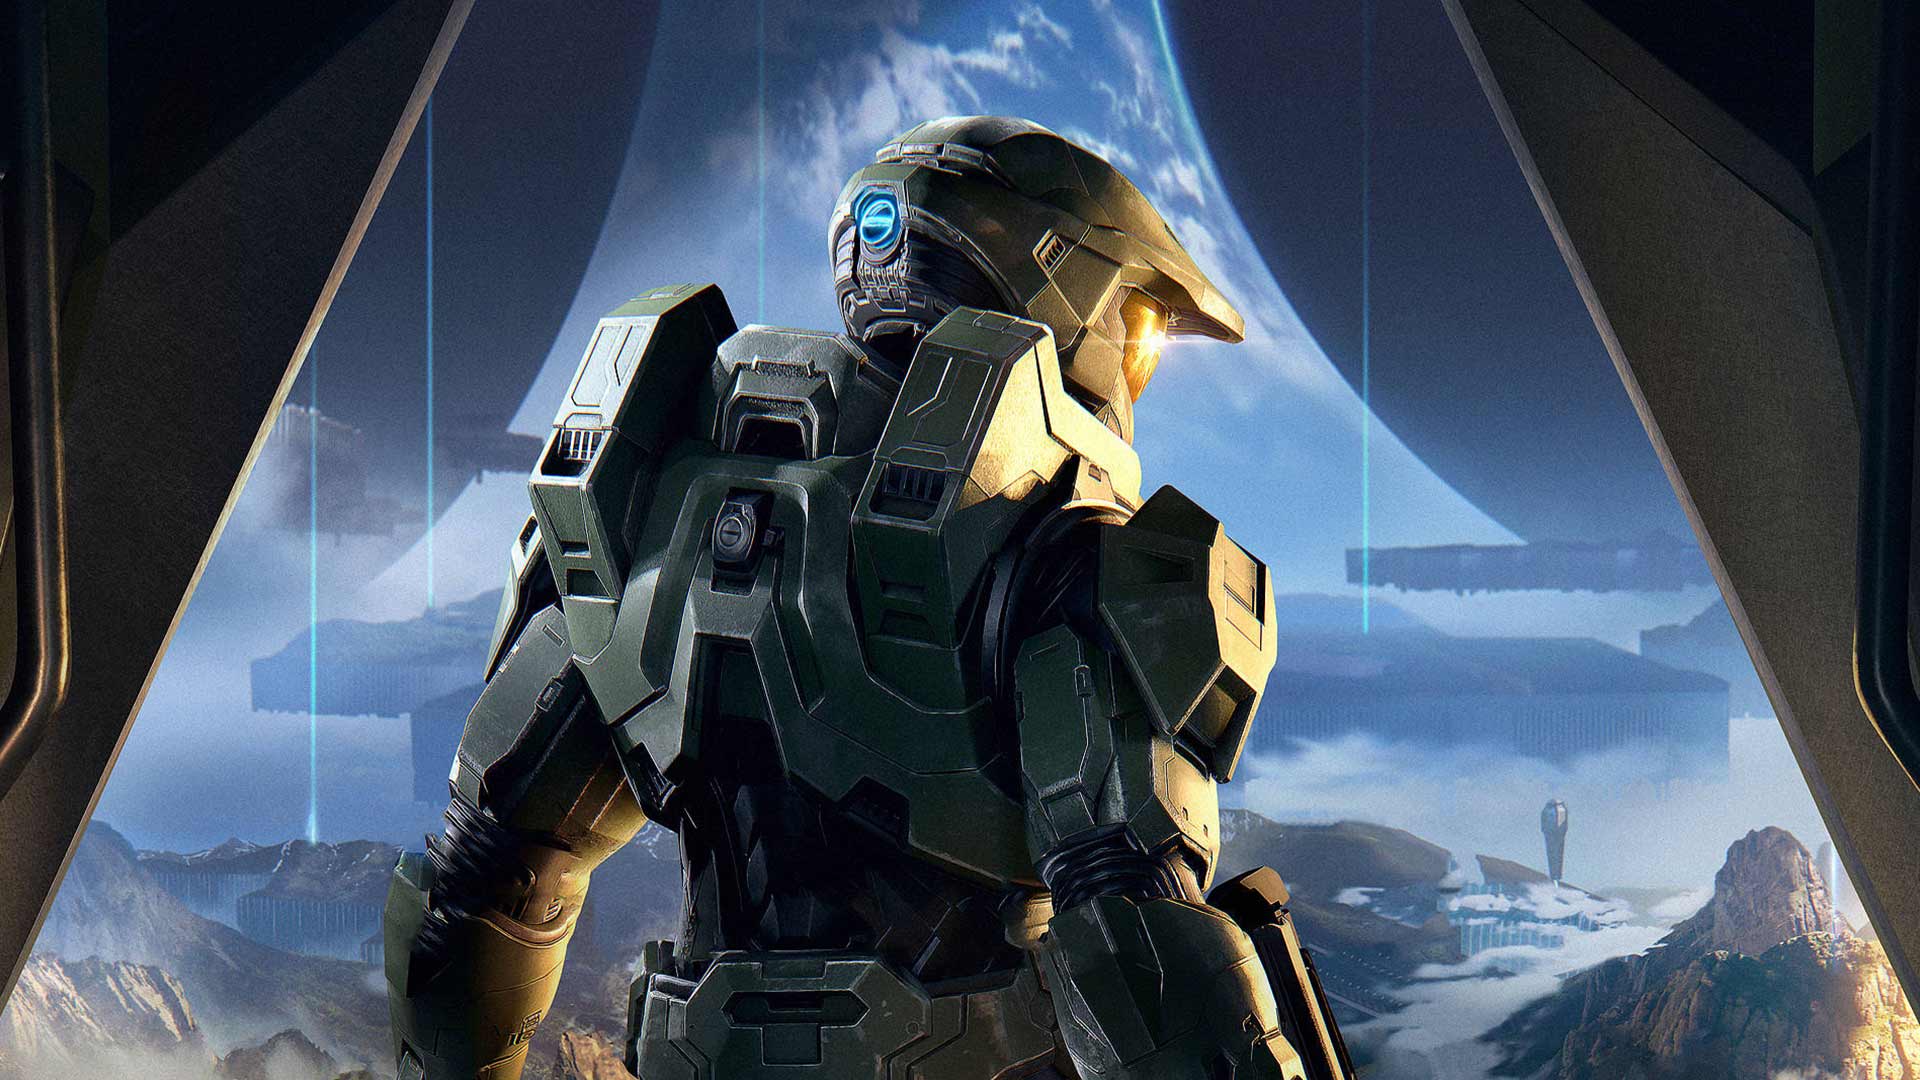 نمایش بخش داستانی Halo Infinite با نزدیک شدن به زمان عرضه بازی